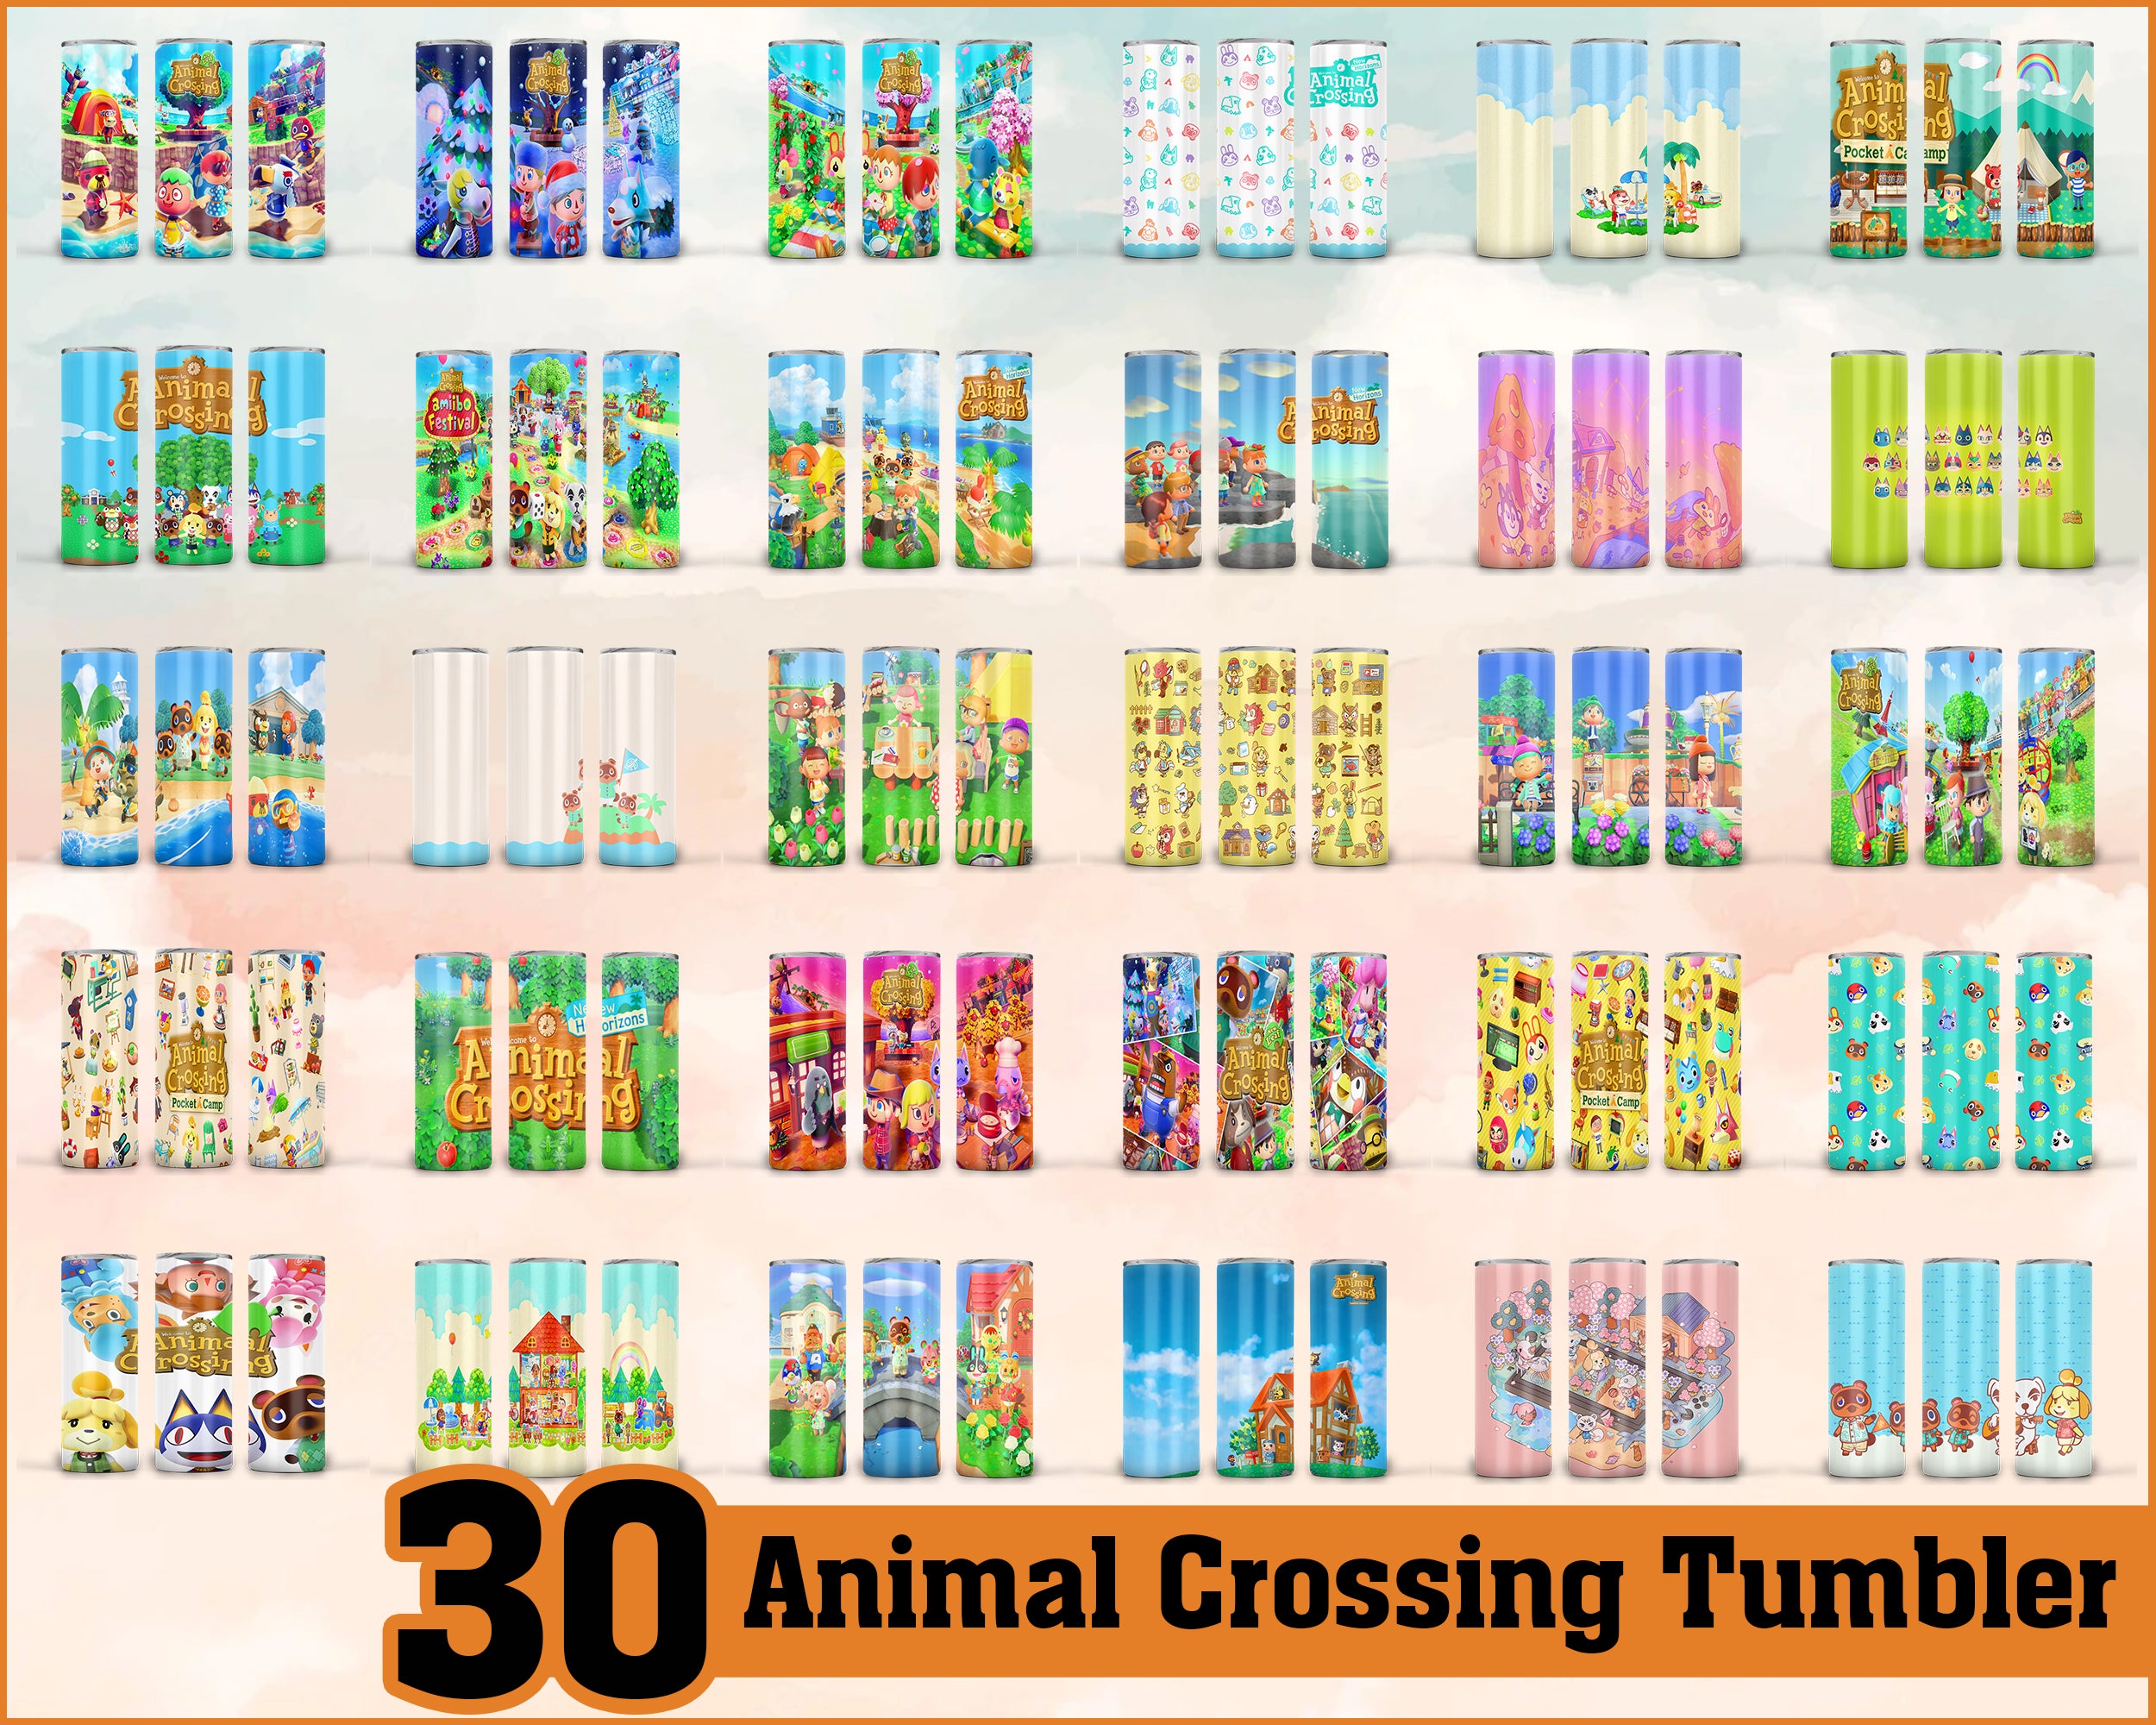 Animal crossing Tumbler - Animal crossing PNG - Tumbler design - Digital download